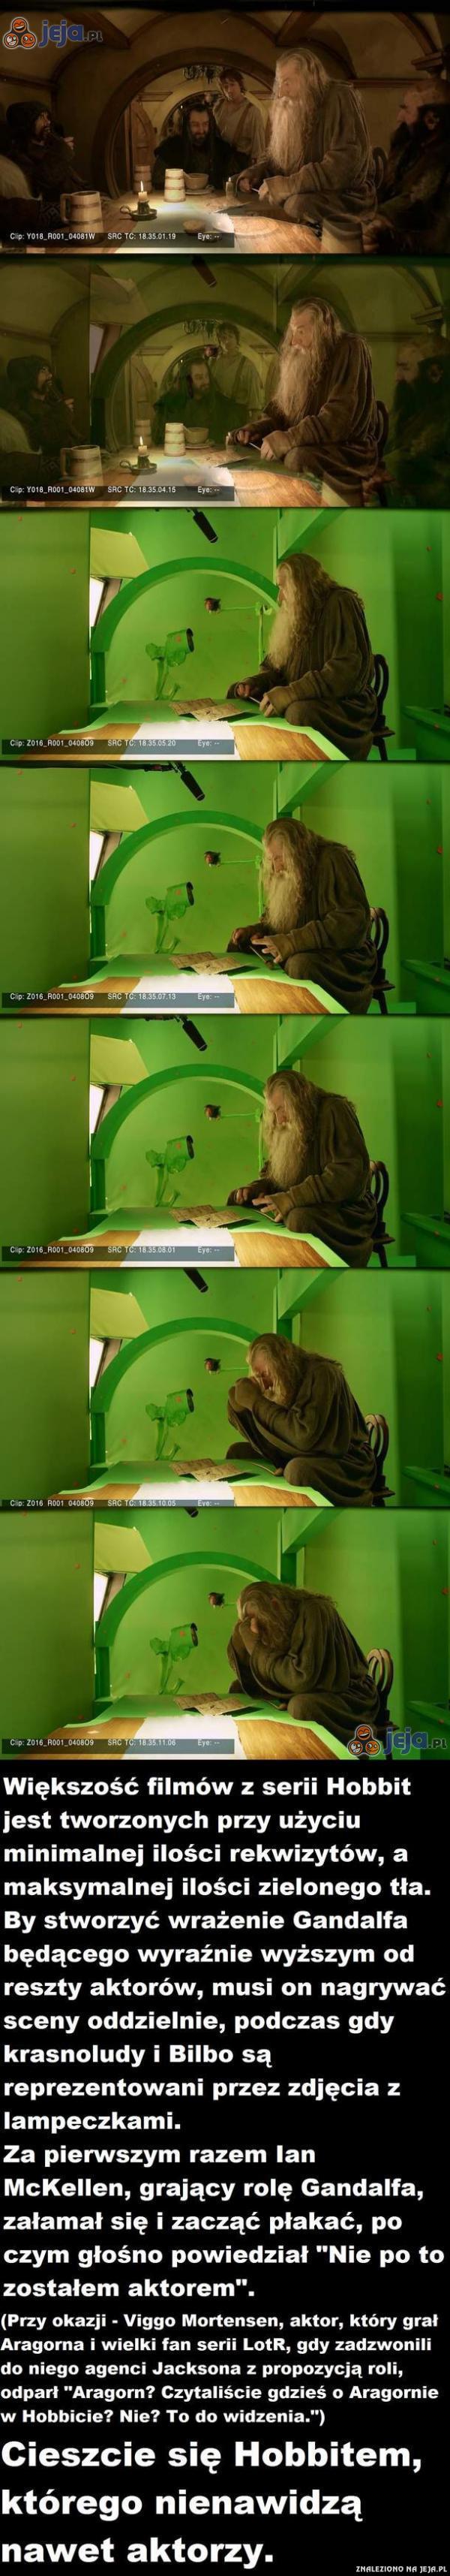 Tajemnica tworzenia Hobbita